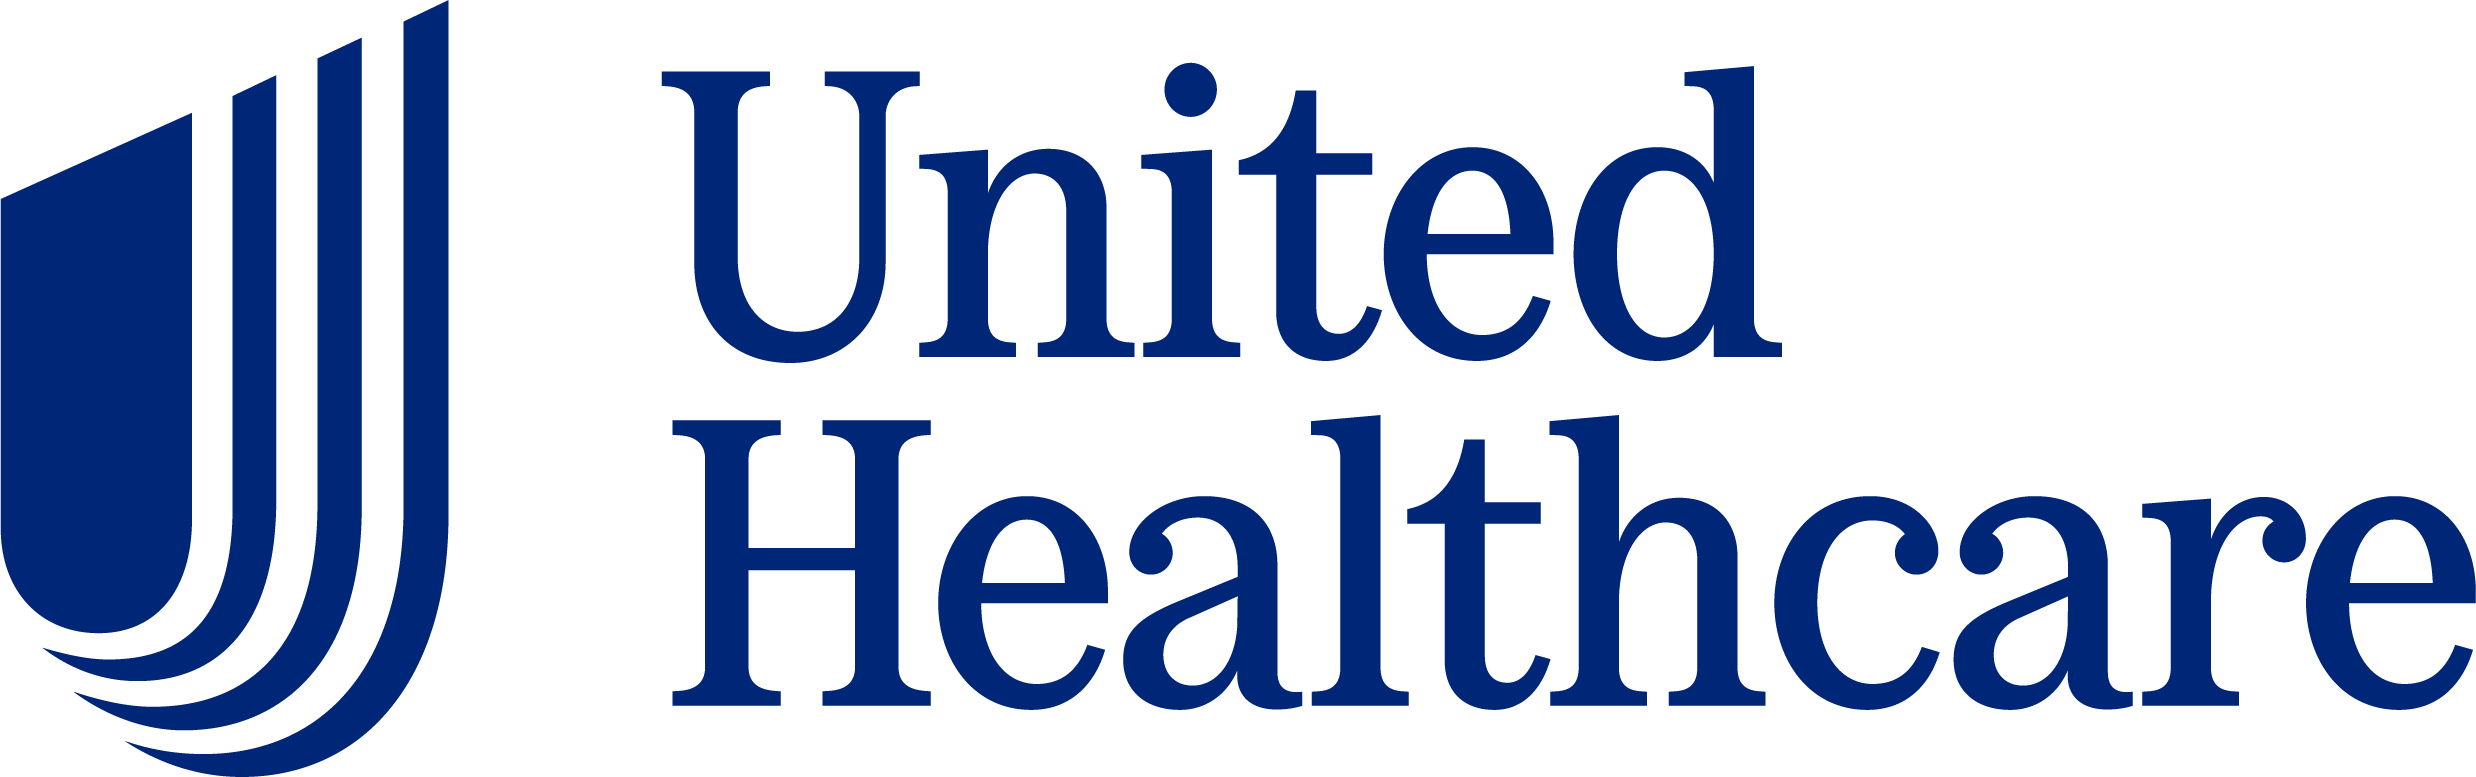 Logotipo de United Healthcare